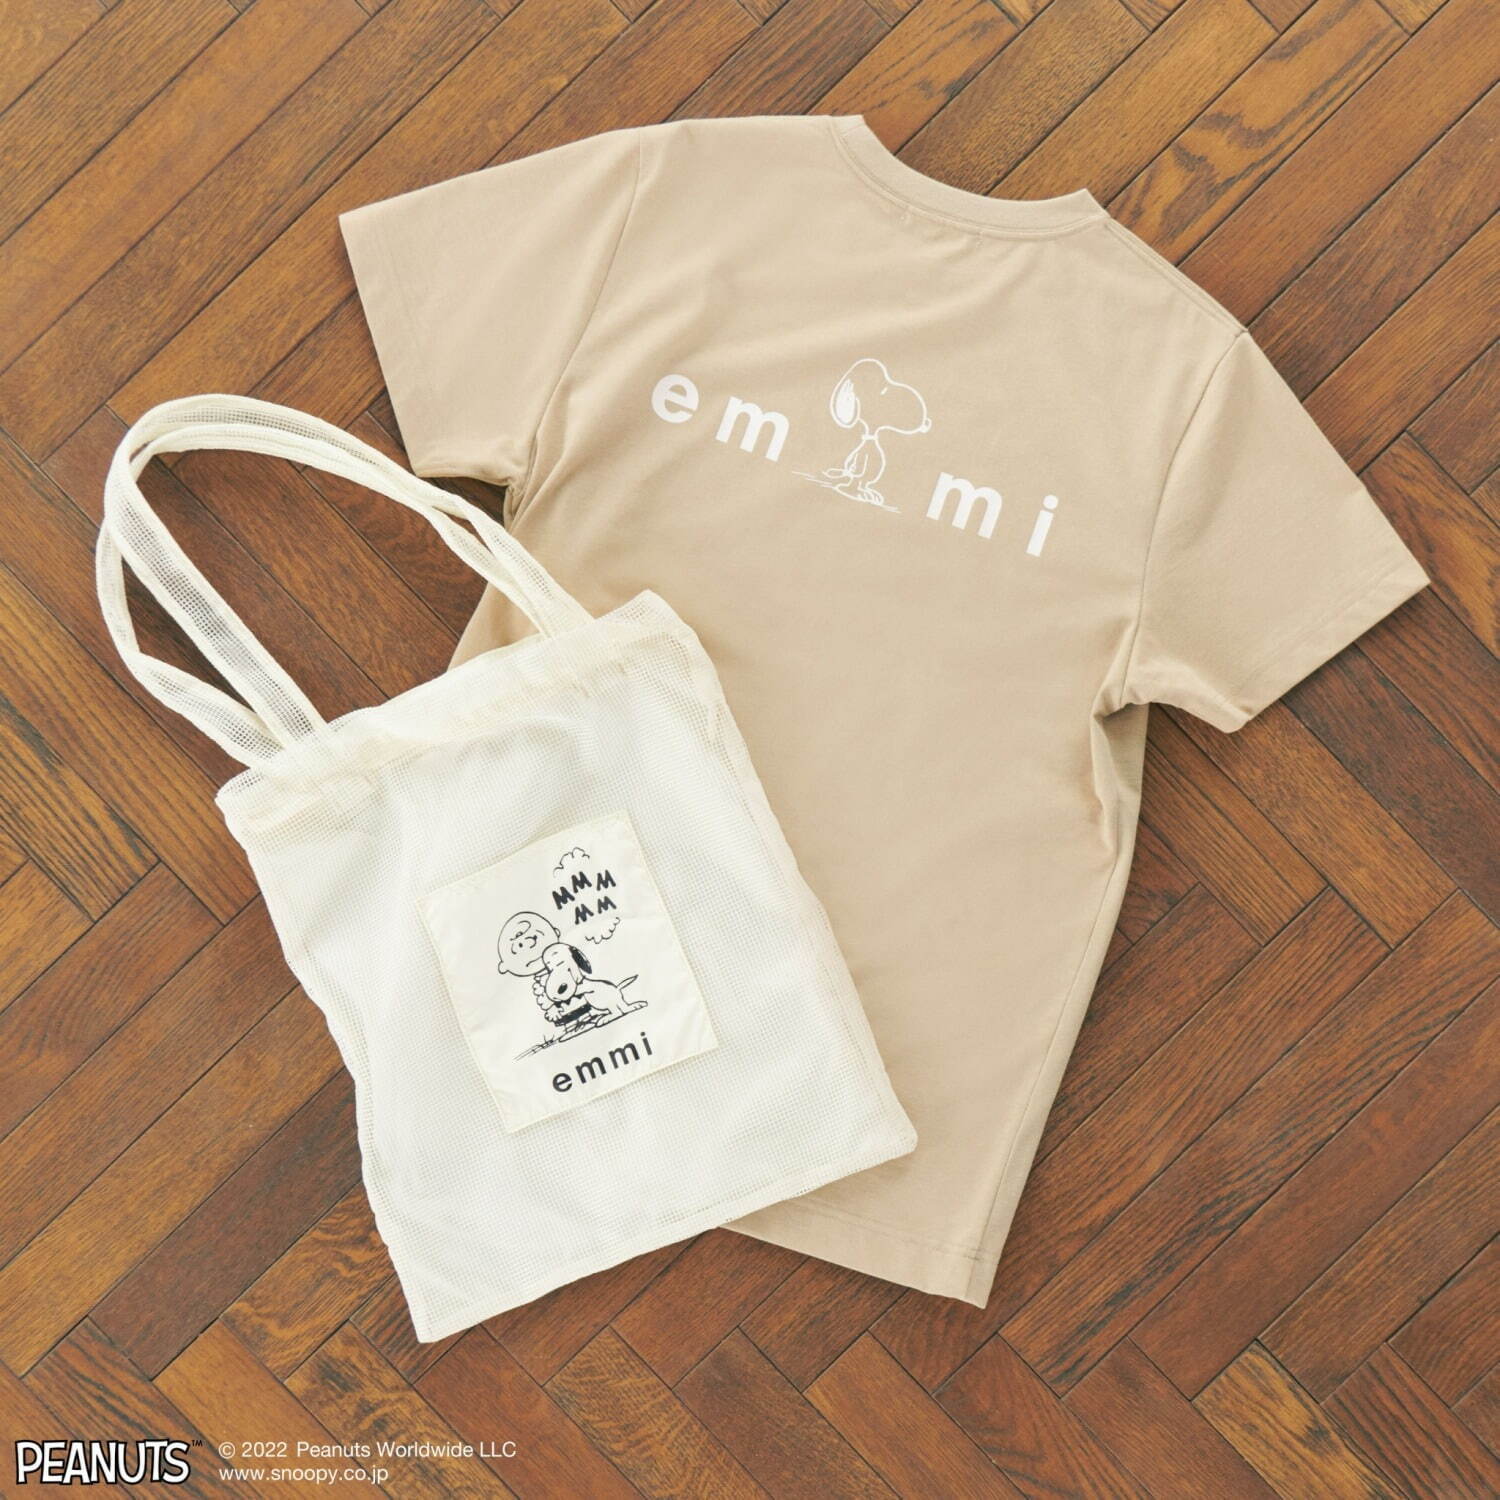 emmi meets PEANUTS active T-shirt & Bag set 8,800円